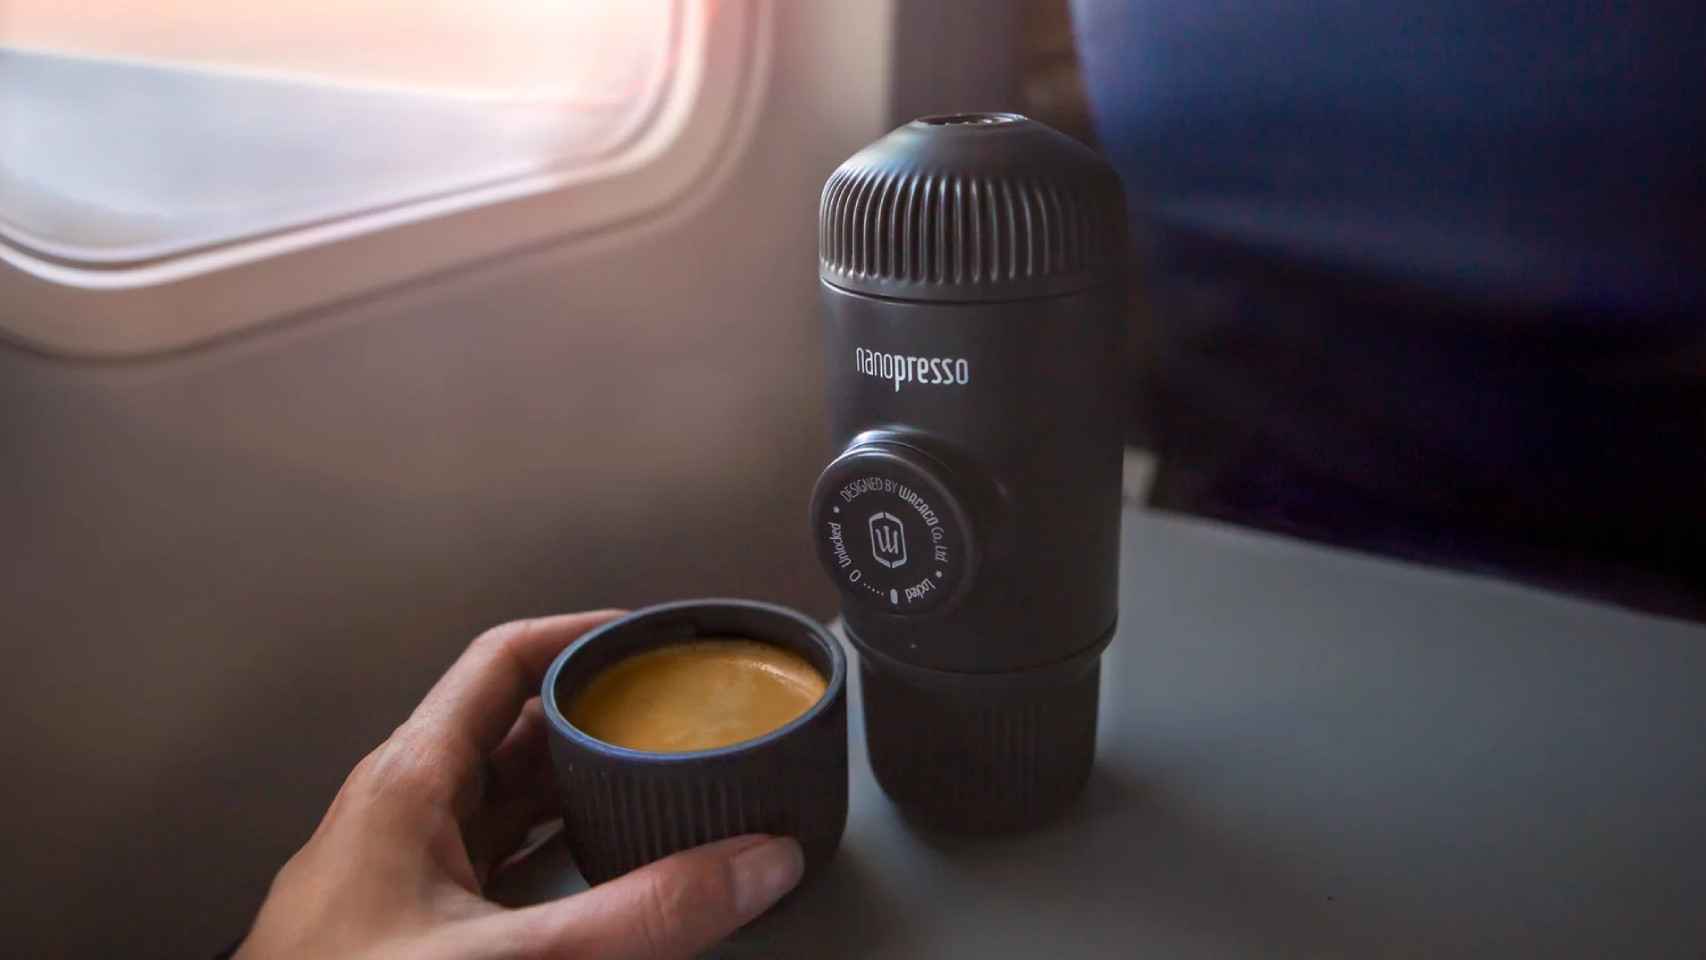 Las cápsulas Nespresso en todas partes con esta ingeniosa cafetera portátil